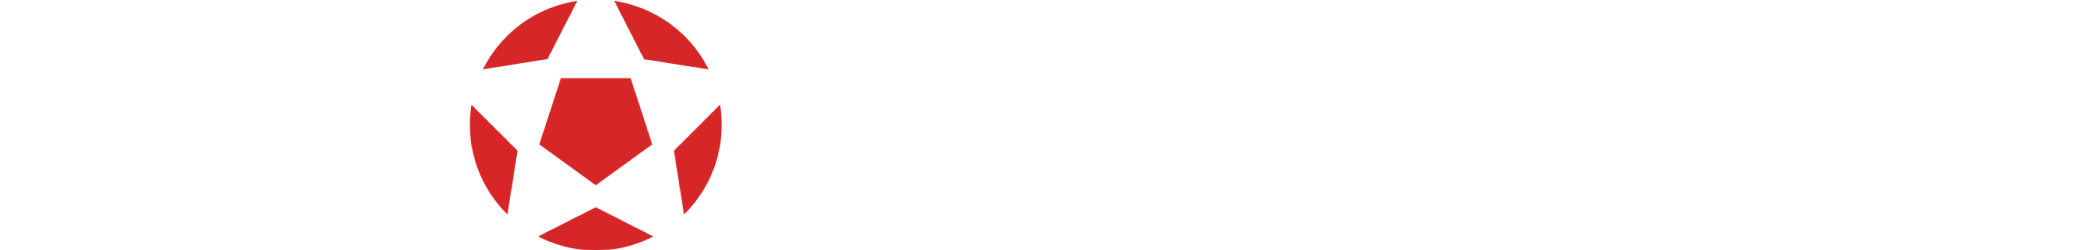 LEON AFFILIATES - Company logo